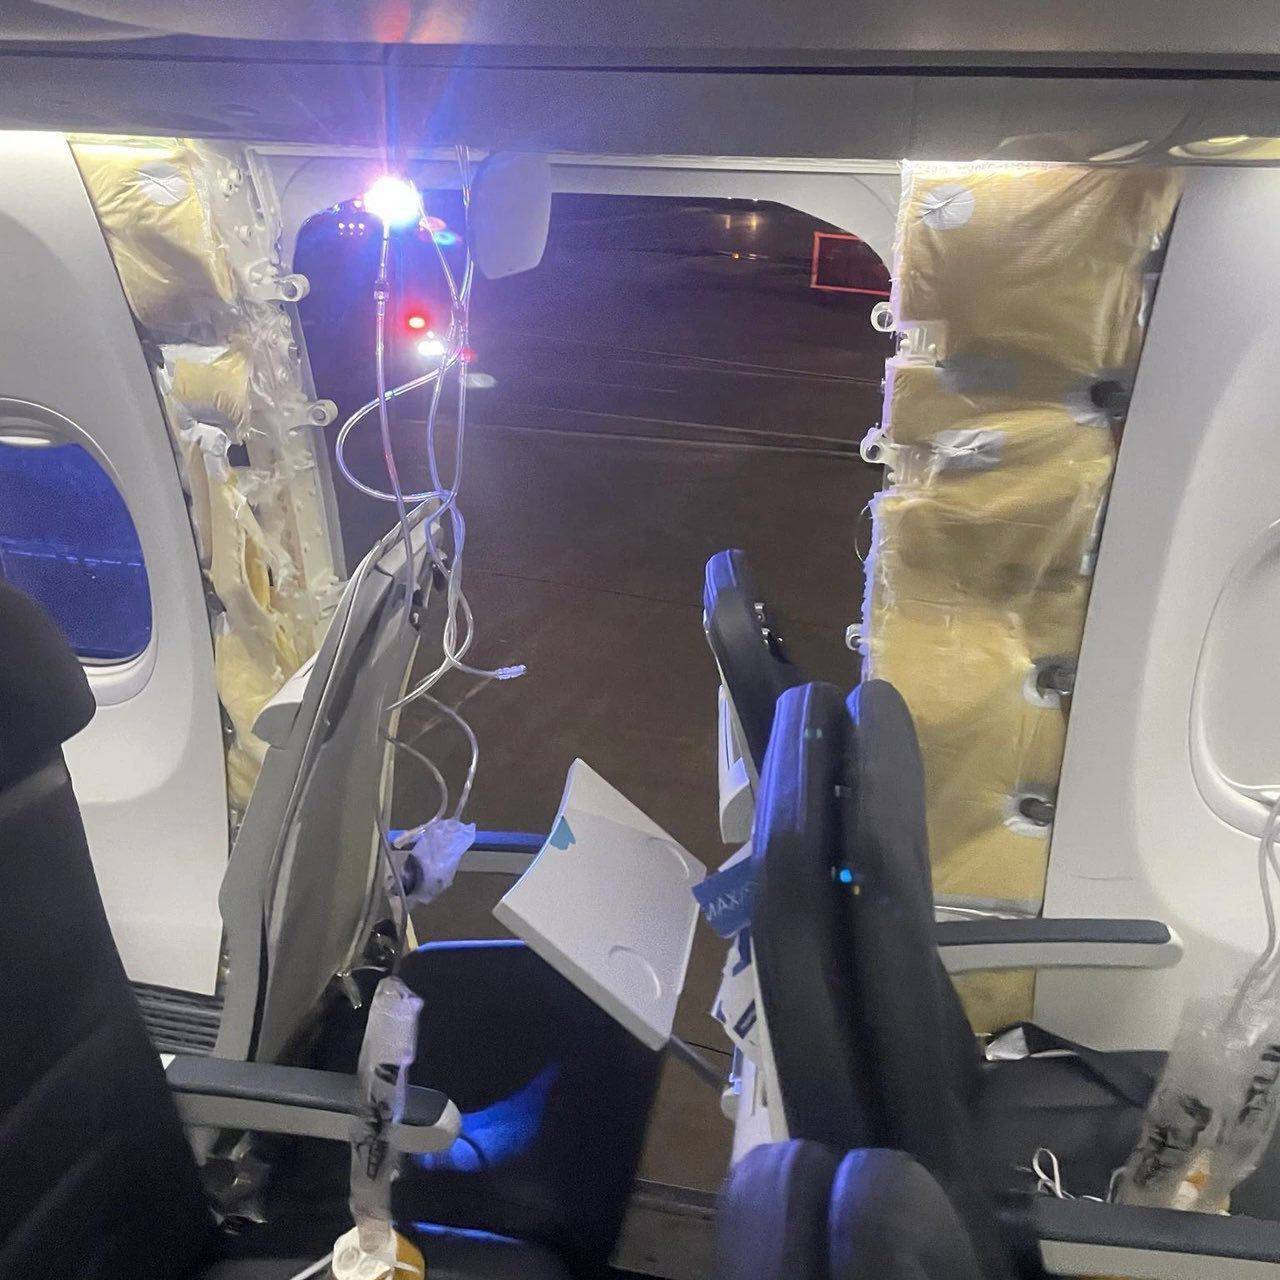 В США у самолета с 171 пассажиром во время полета отвалилась дверь. Фото и видео